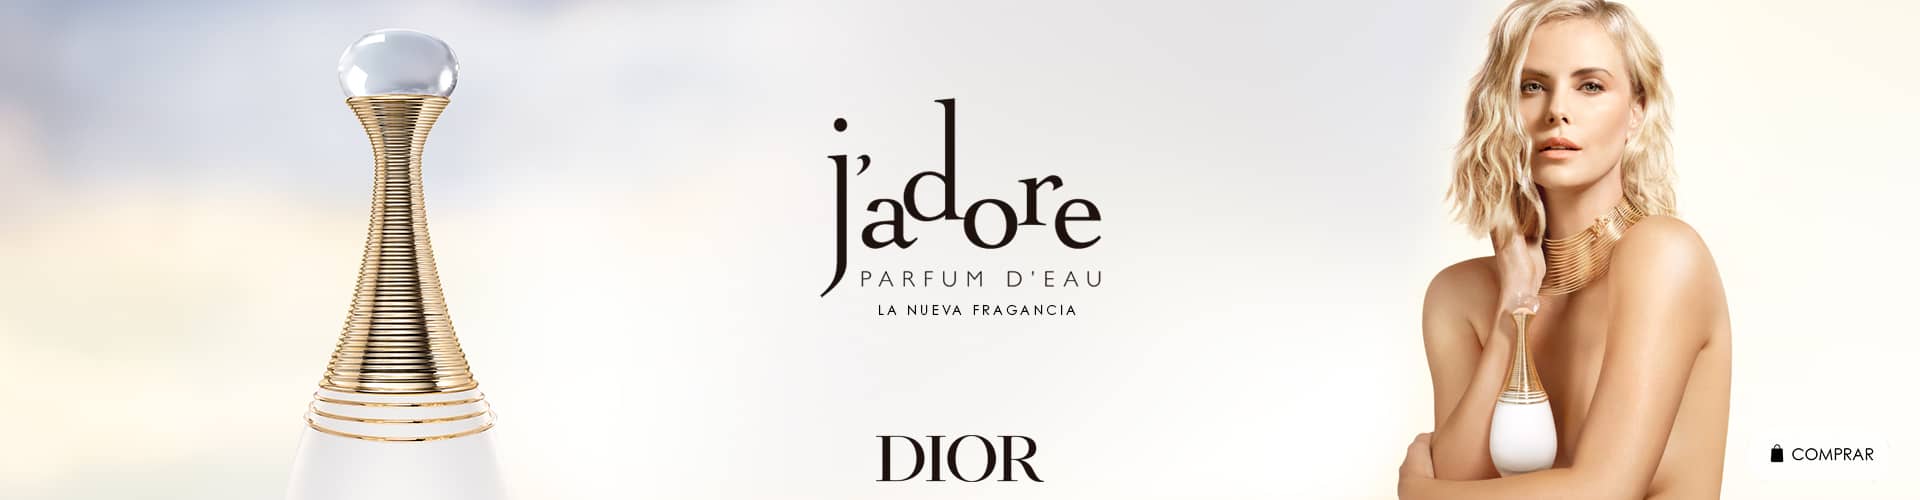 J'adore Parfum d'Eau | Nuevo Perfume para Mujer de DIOR | Prieto.es